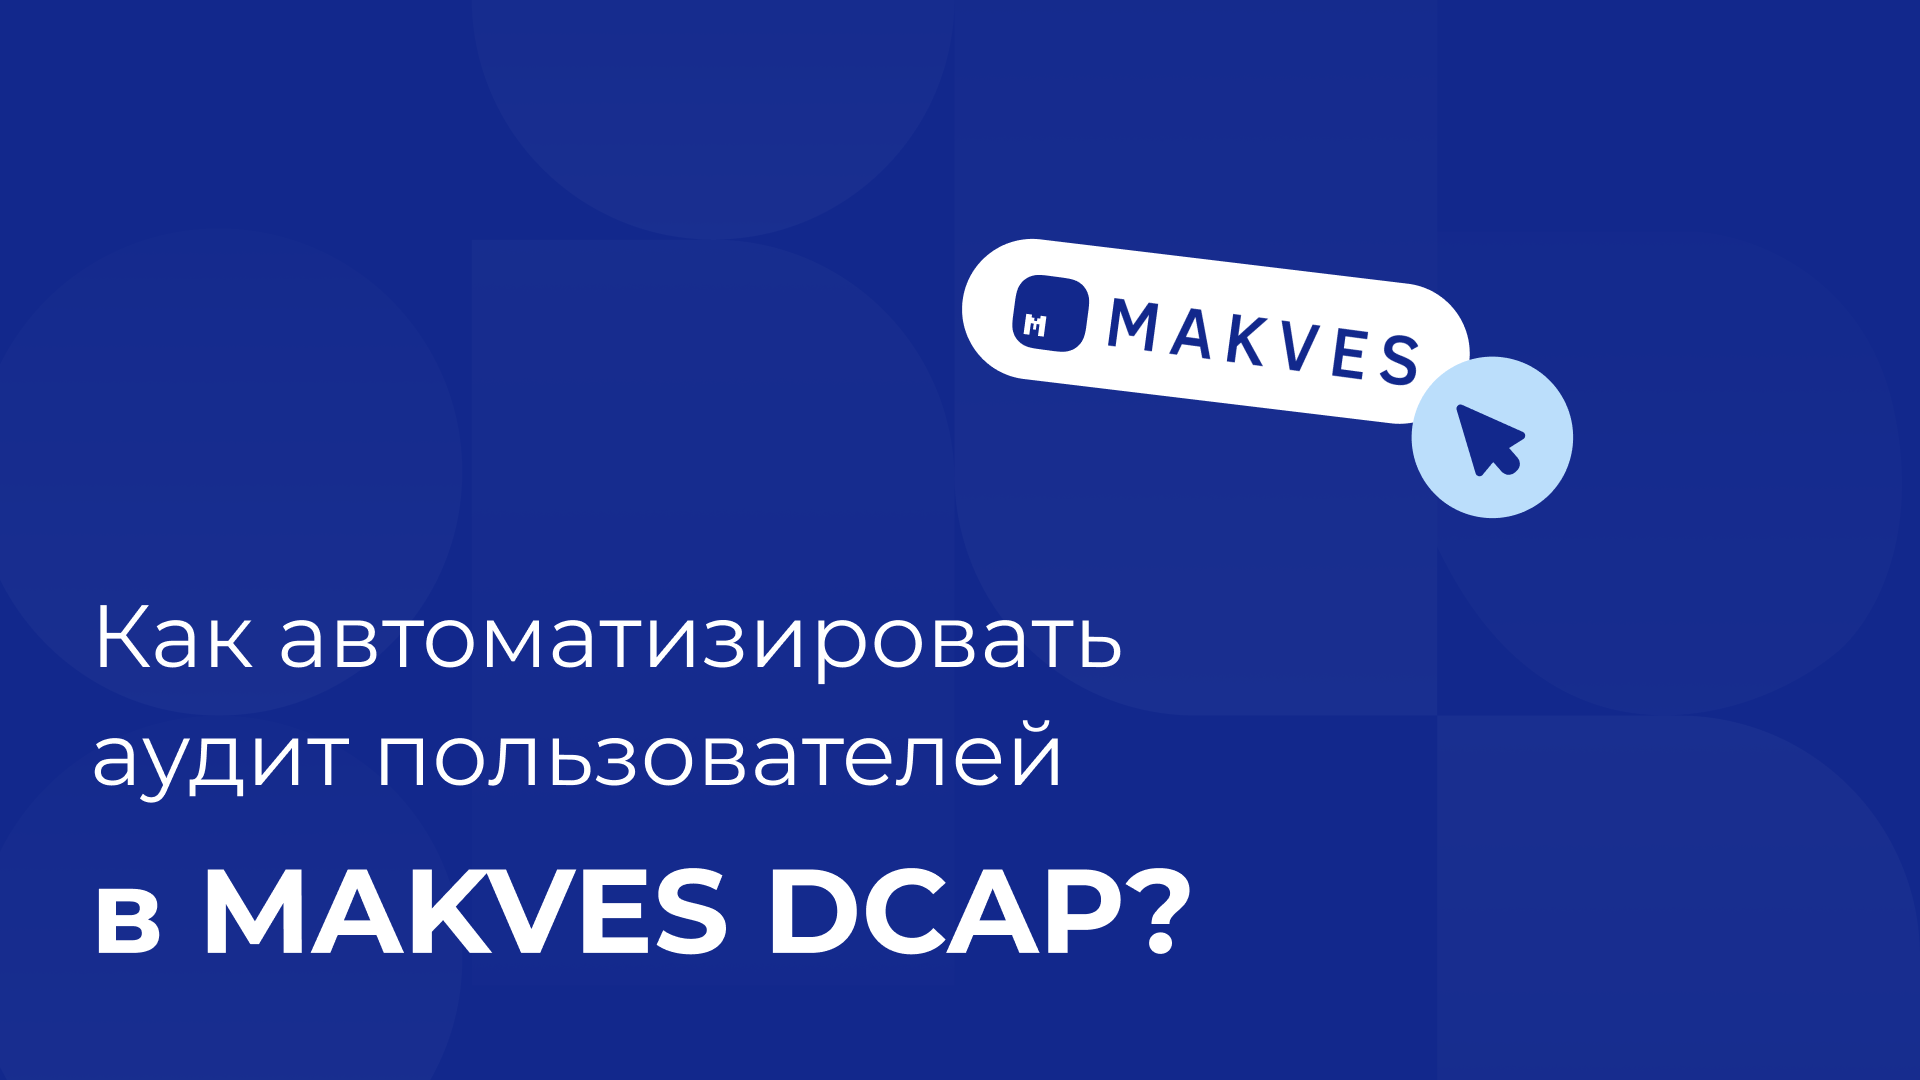 Как автоматизировать аудит пользователей в Makves DCAP